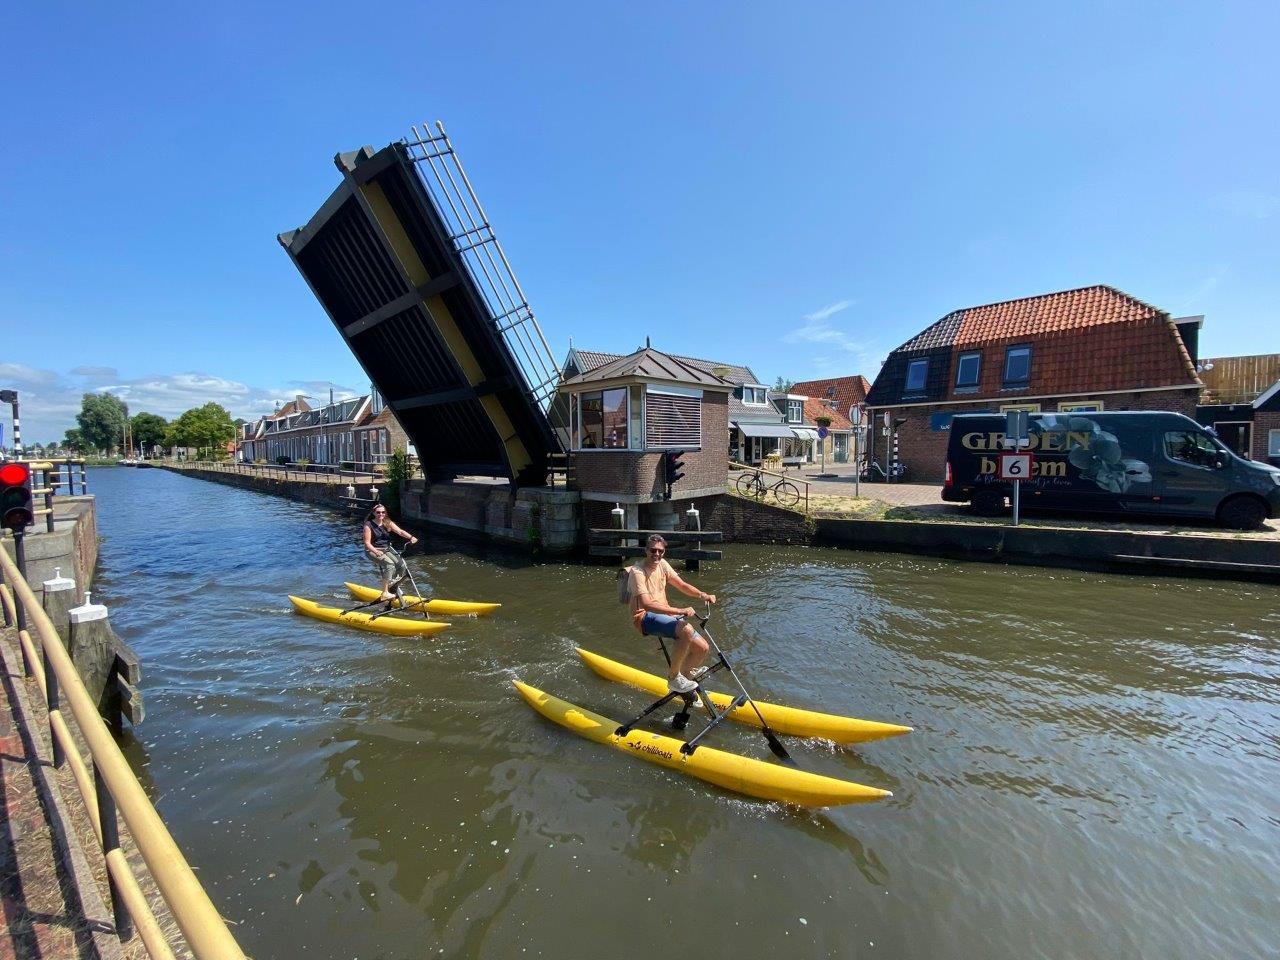 Waterfietsen in Workum is een leuke activiteit in Friesland